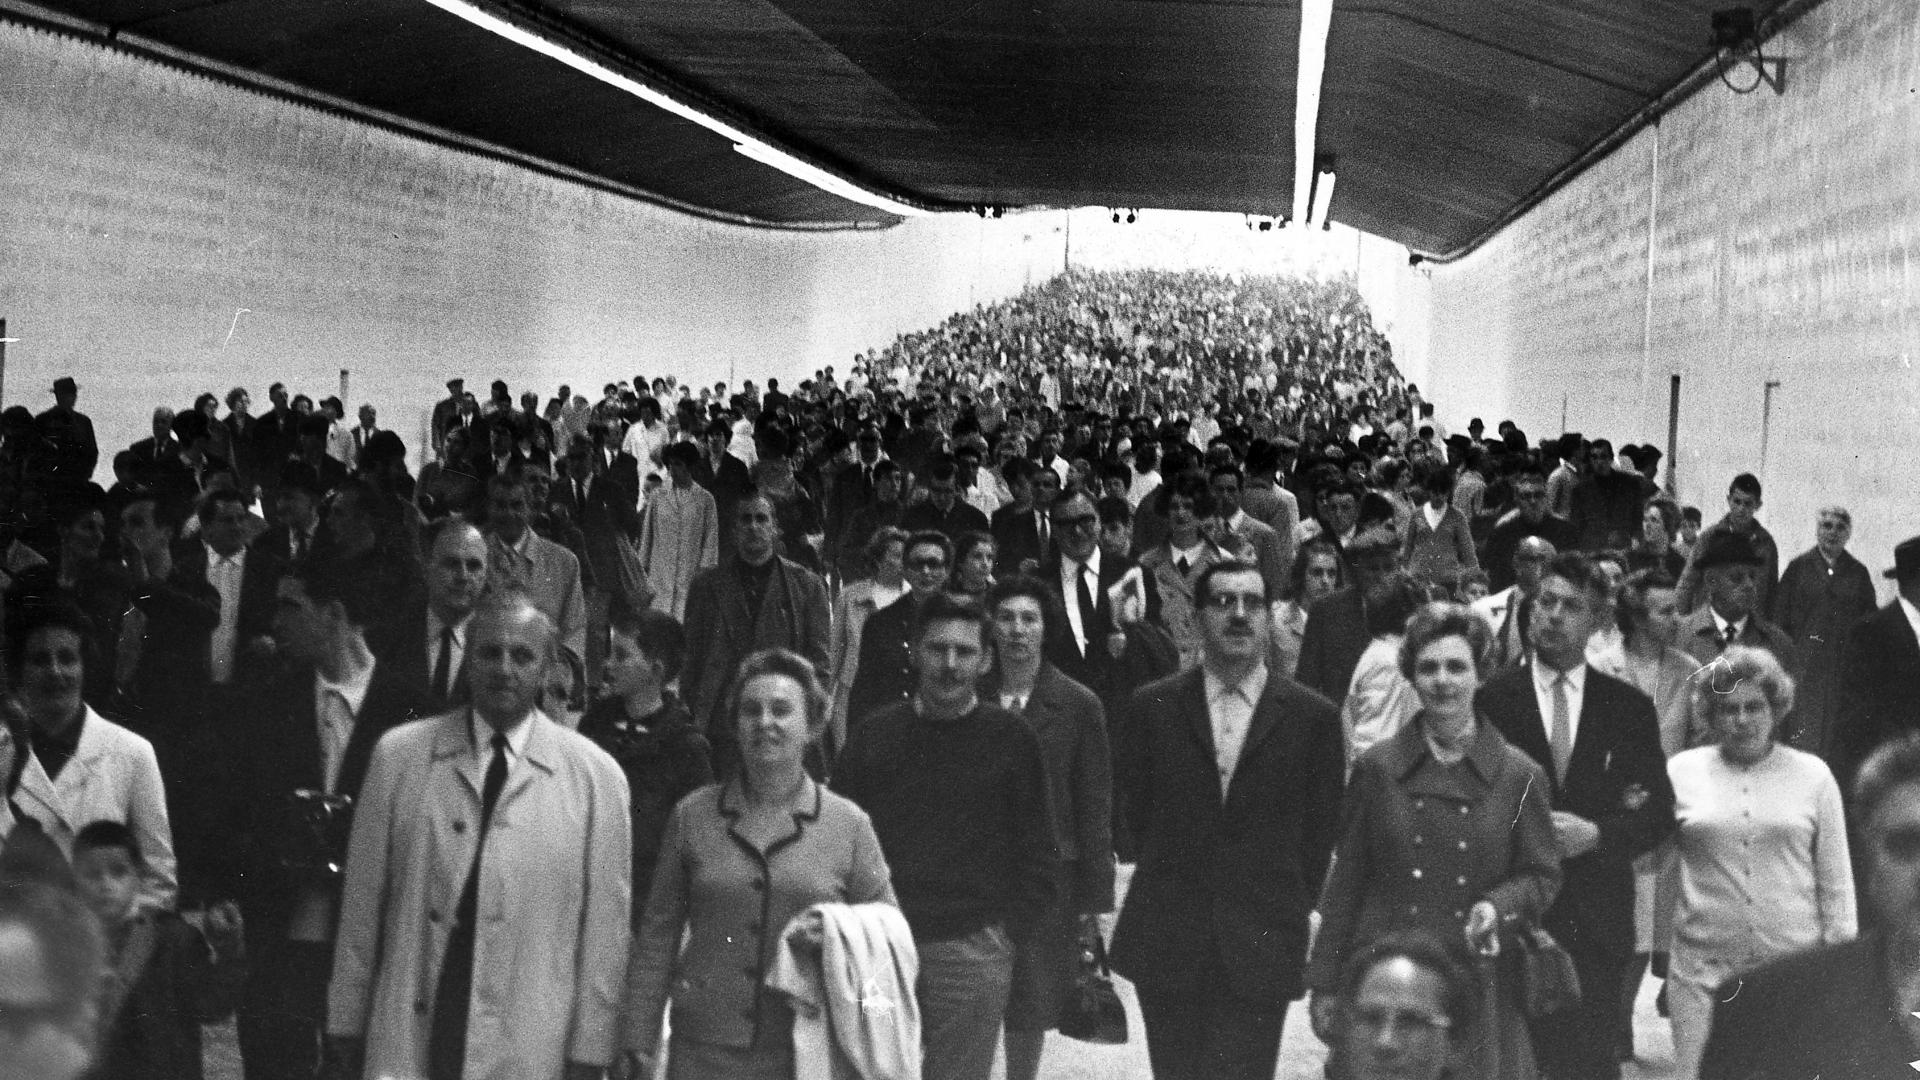 KT - blik in de historie - duizenden bezoekers wandelen door tunnel